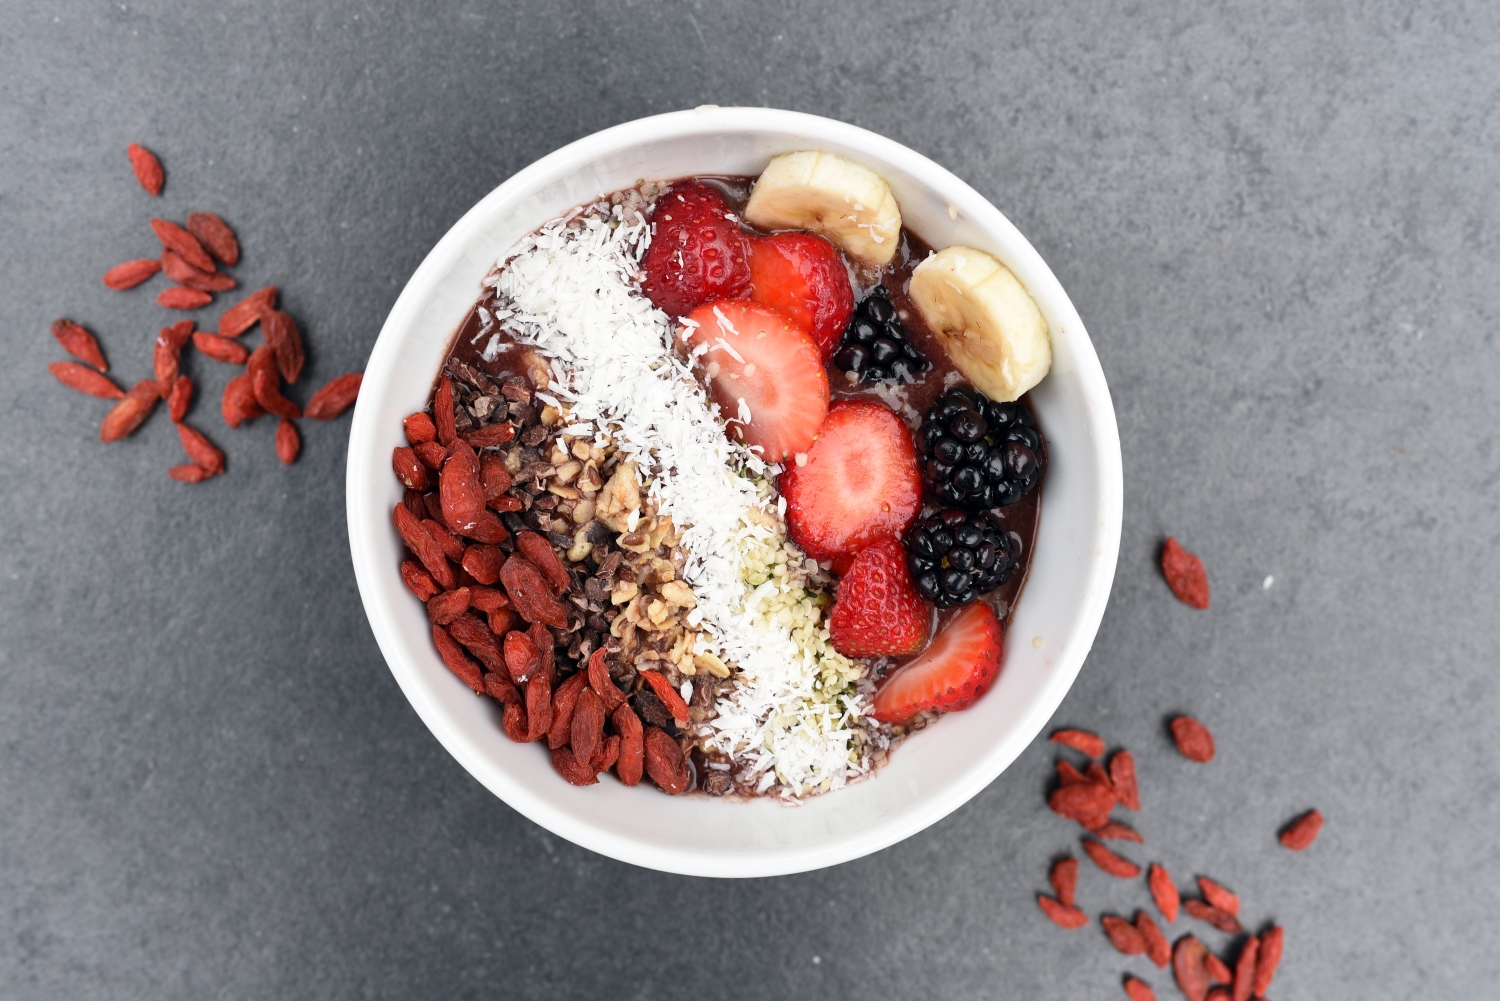 Smoothie bowl na śniadanie i nie tylko - znajdź ulubiony smak!